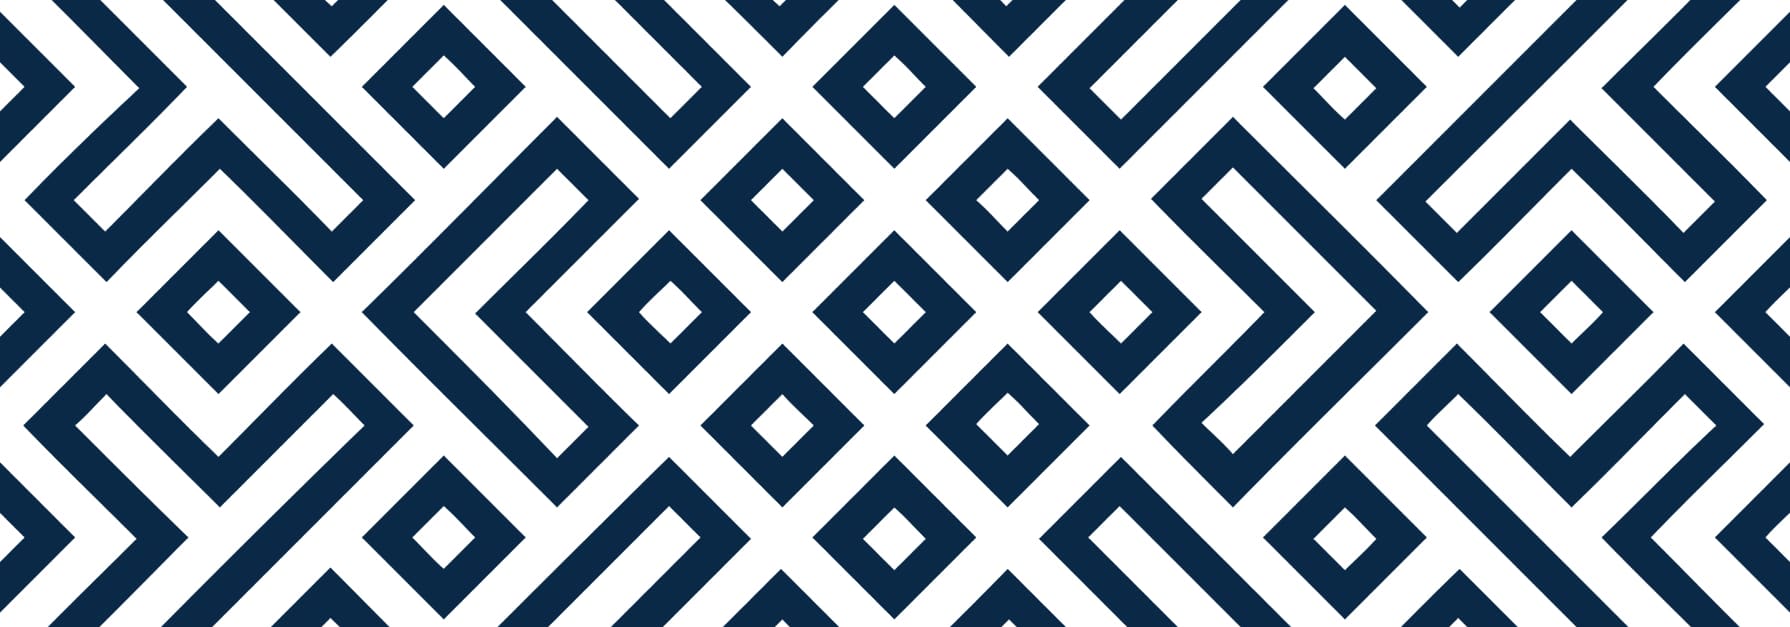 Blue maze background texture